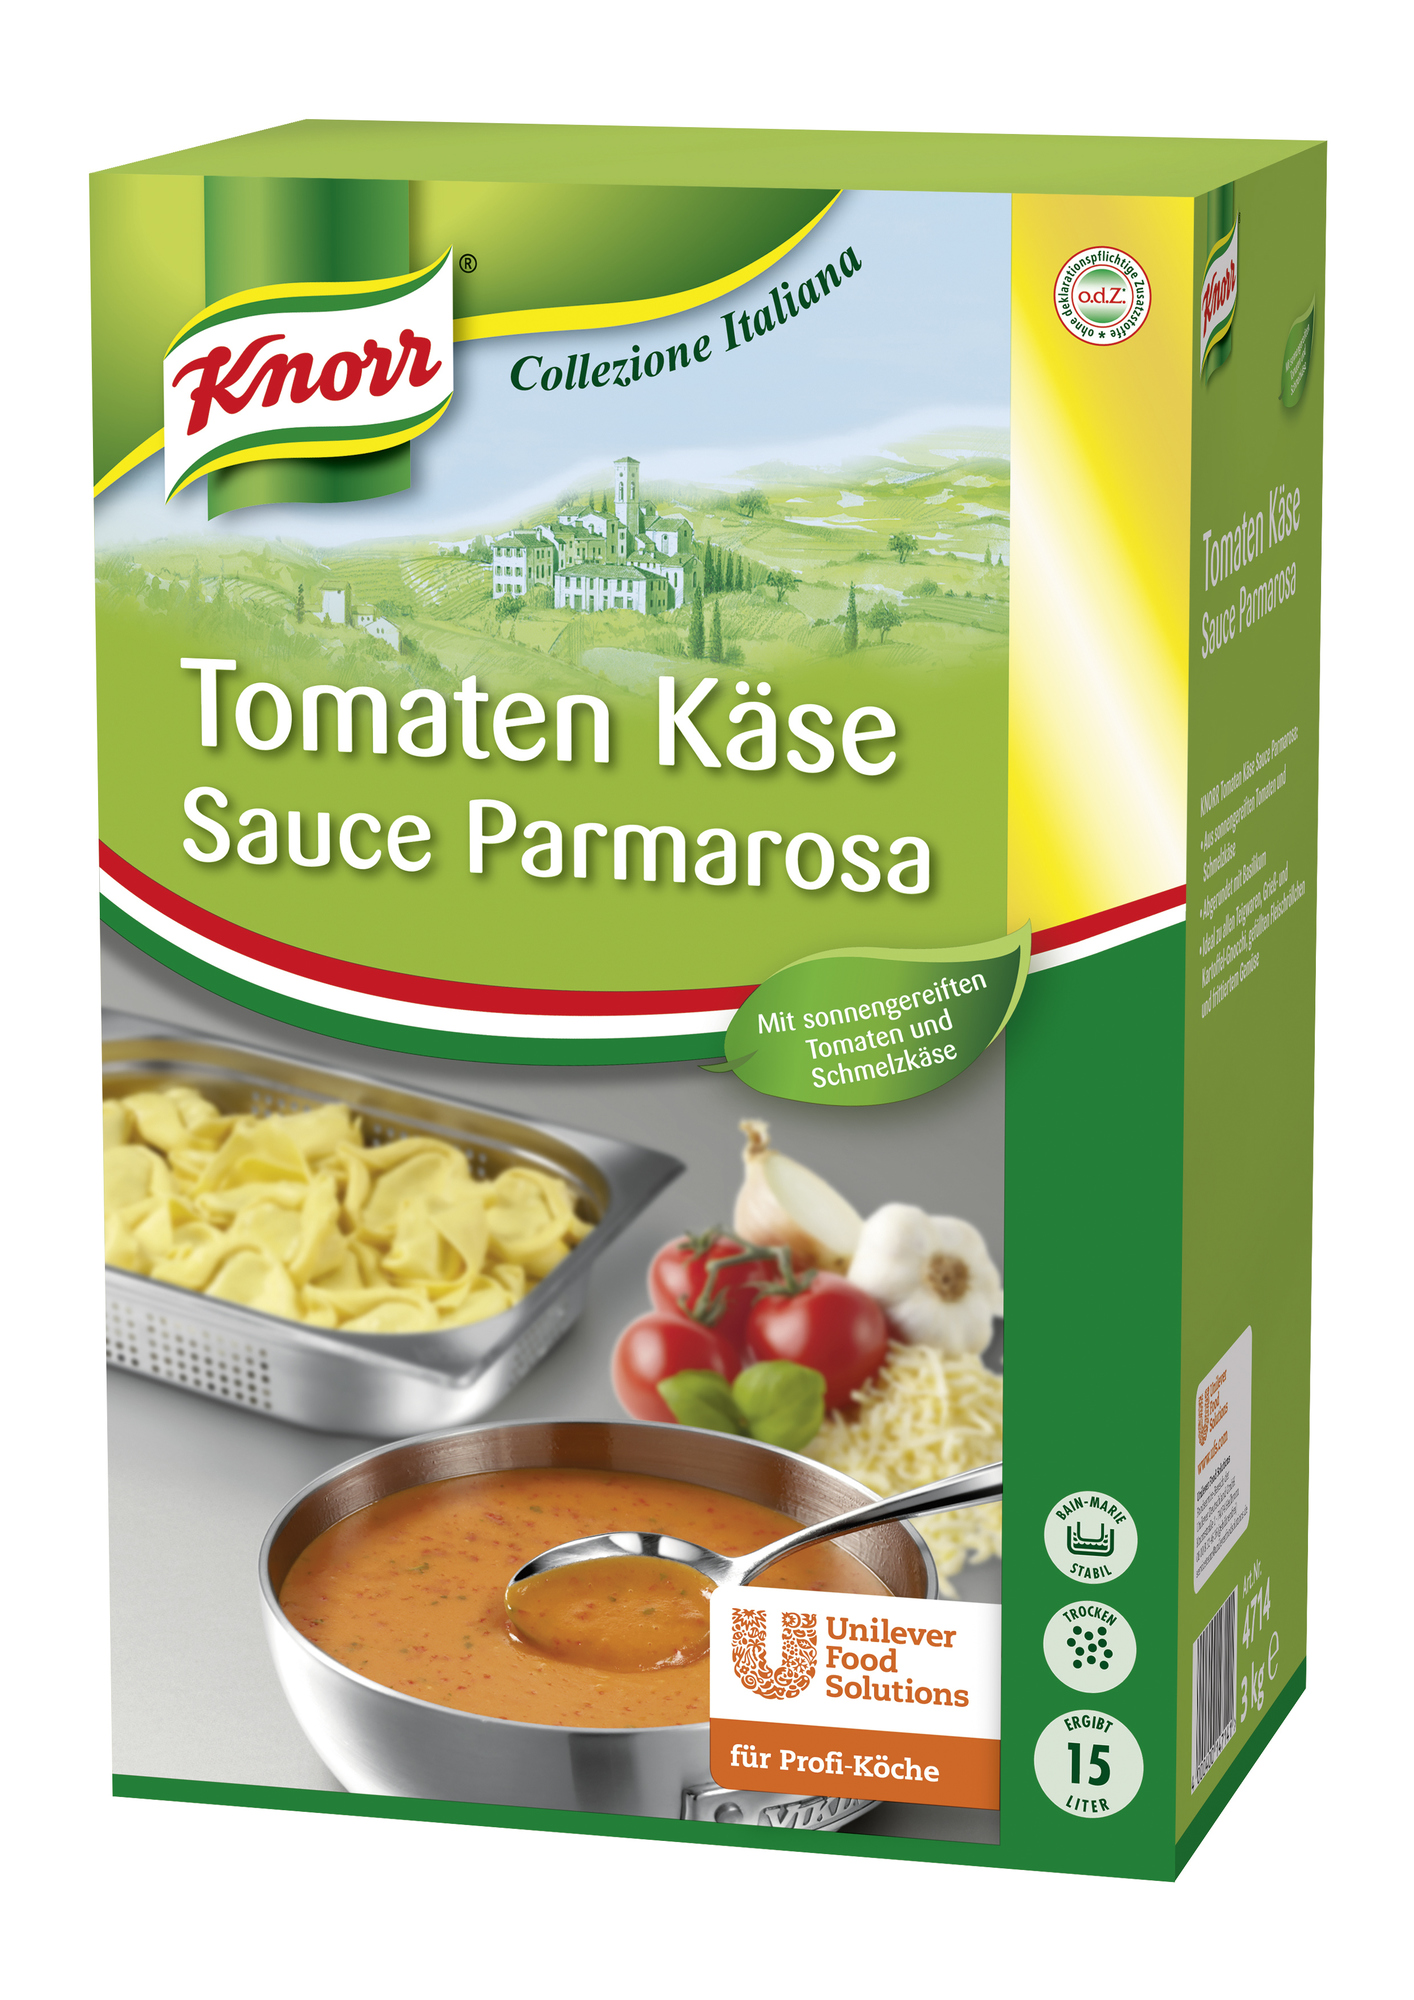 Tomaten Käse Sauce Parmarosa 3000g